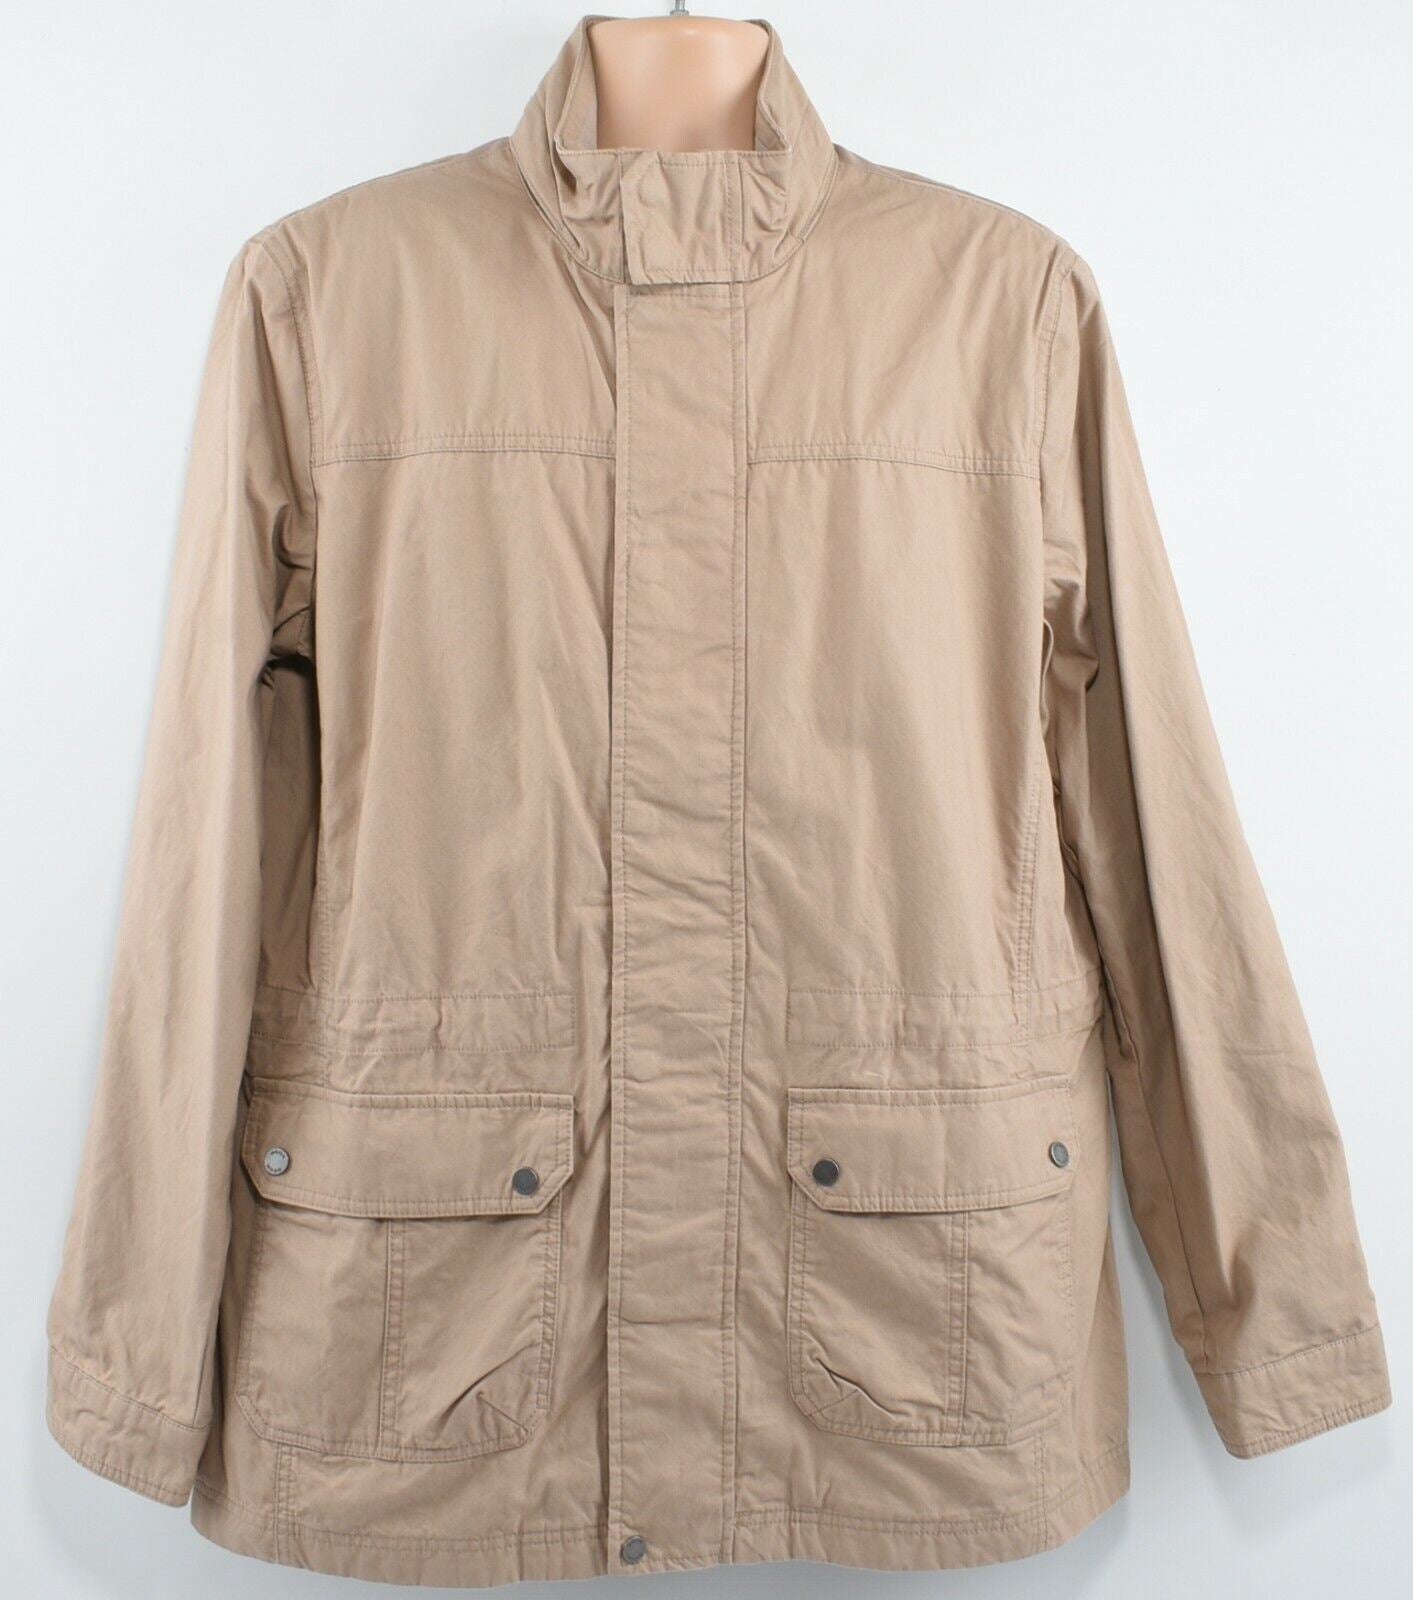 GEOX Men's COBBLESTONE BEIGE Parka Jacket Coat, size 40qy